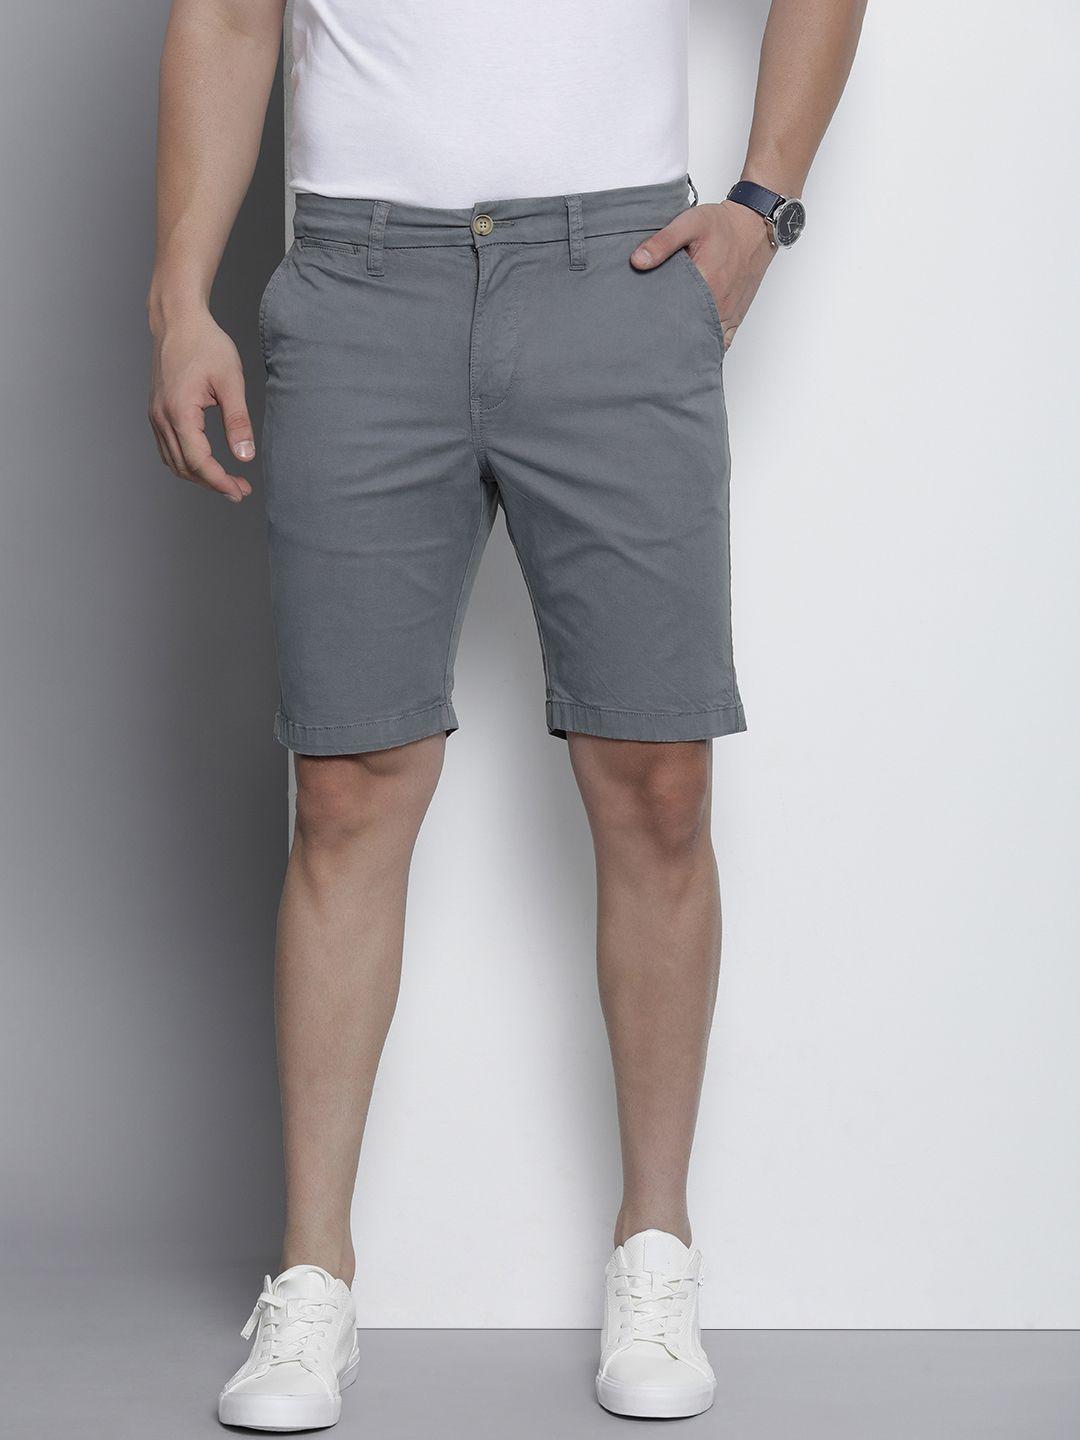 nautica-men-denim-shorts